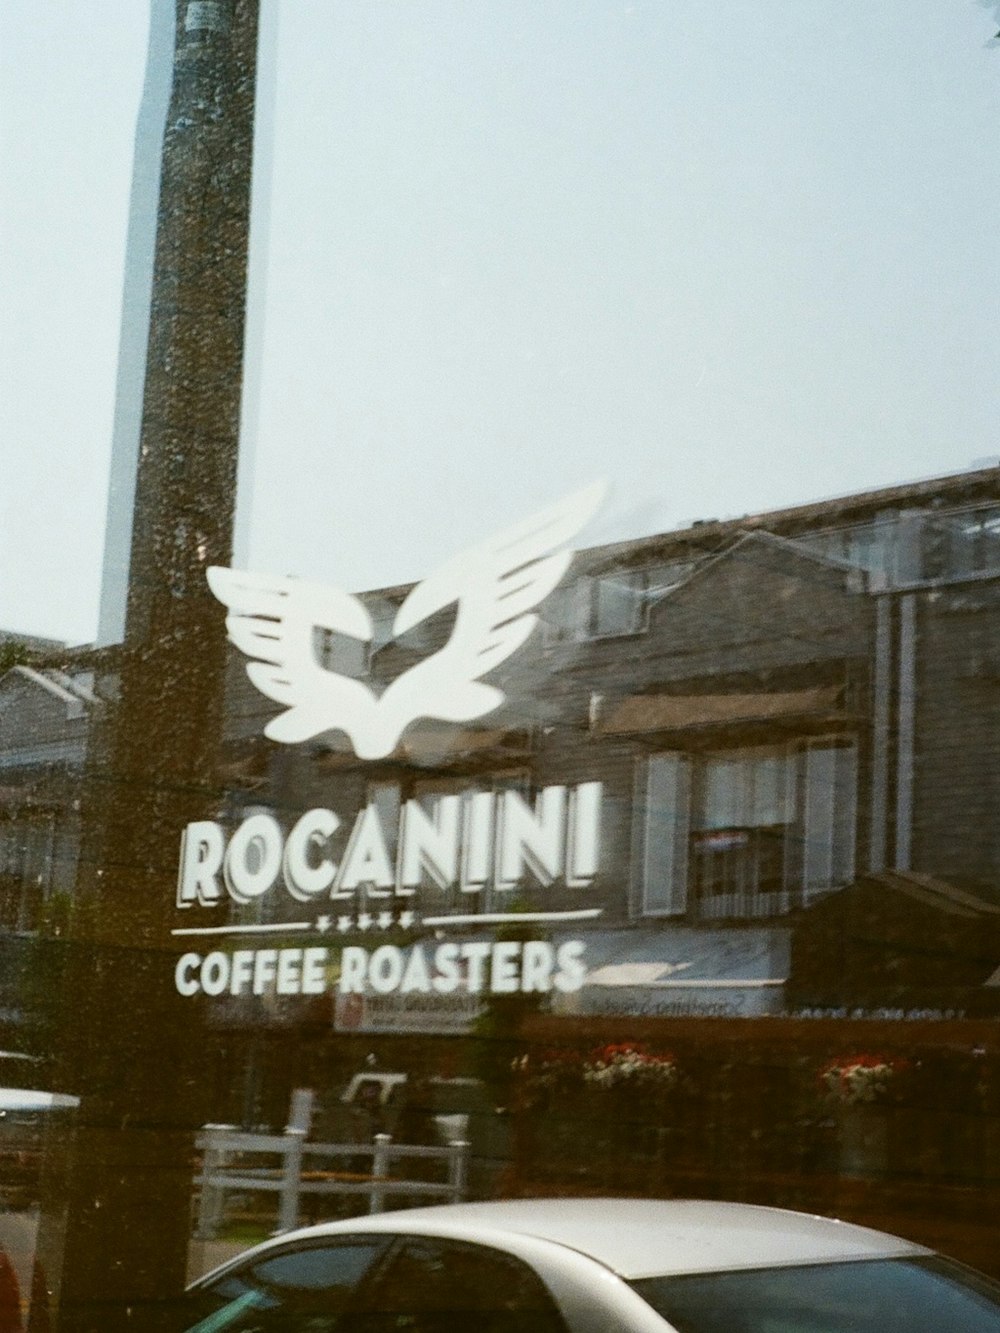 ロガンニコーヒーロースターズと書かれた看板のある建物